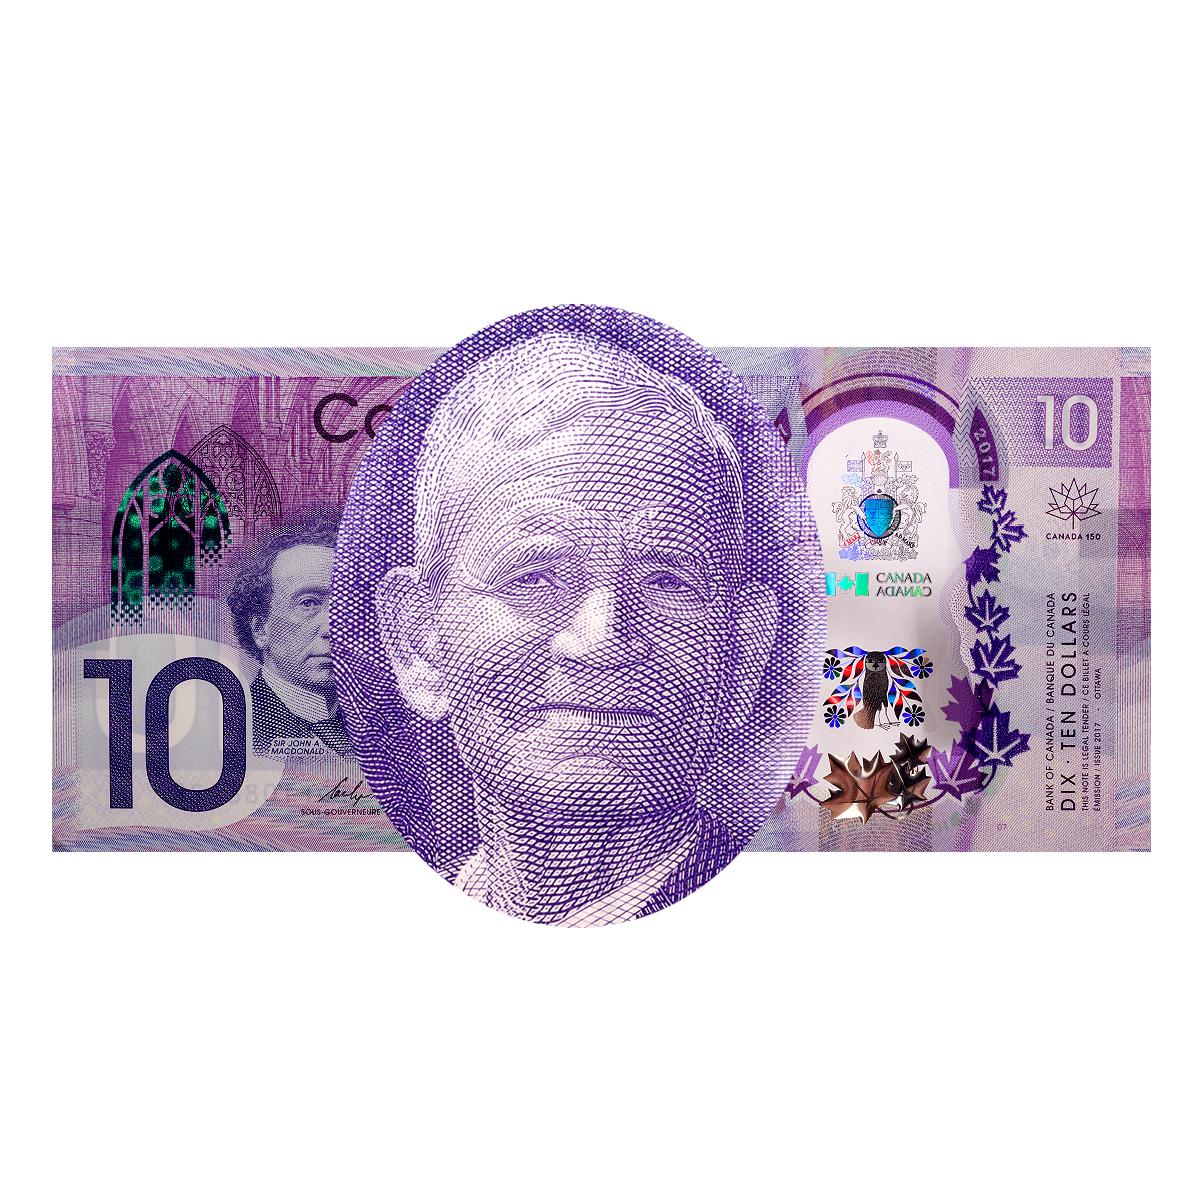 Portrait sur un billet de banque d’un homme autochtone âgé portant un complet.